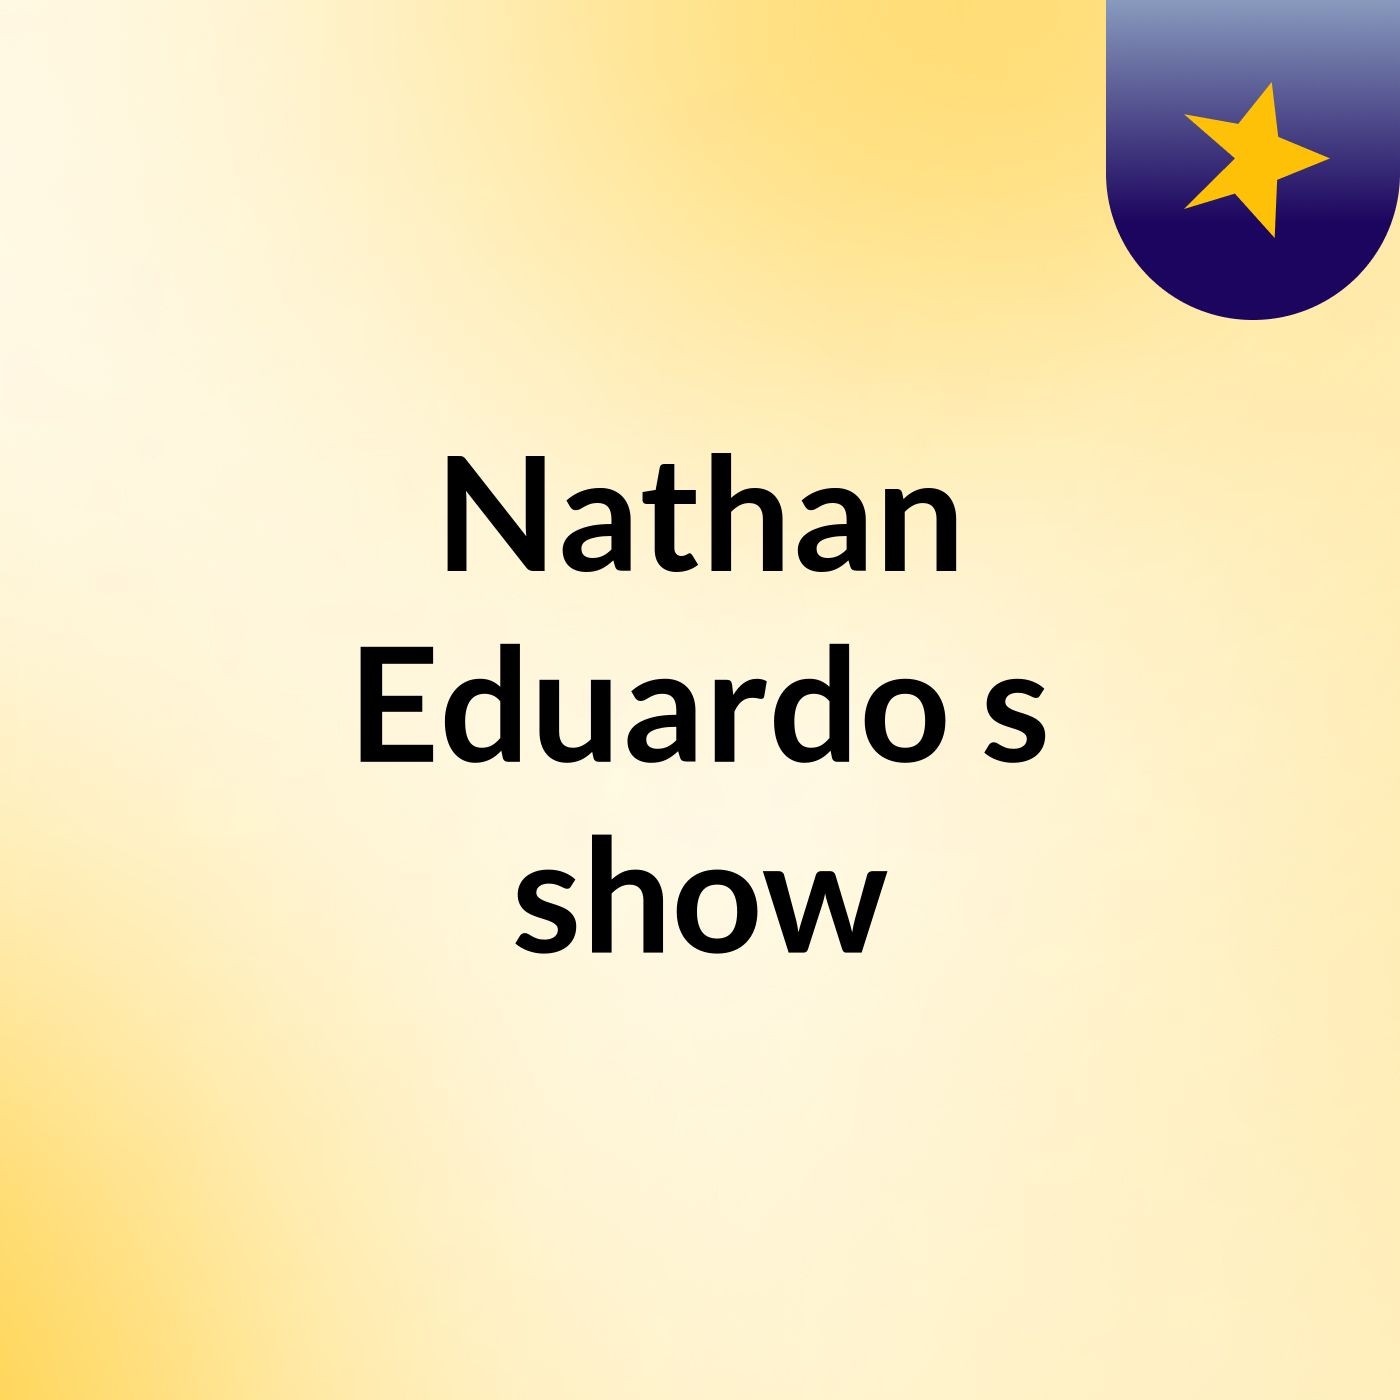 Nathan Eduardo's show